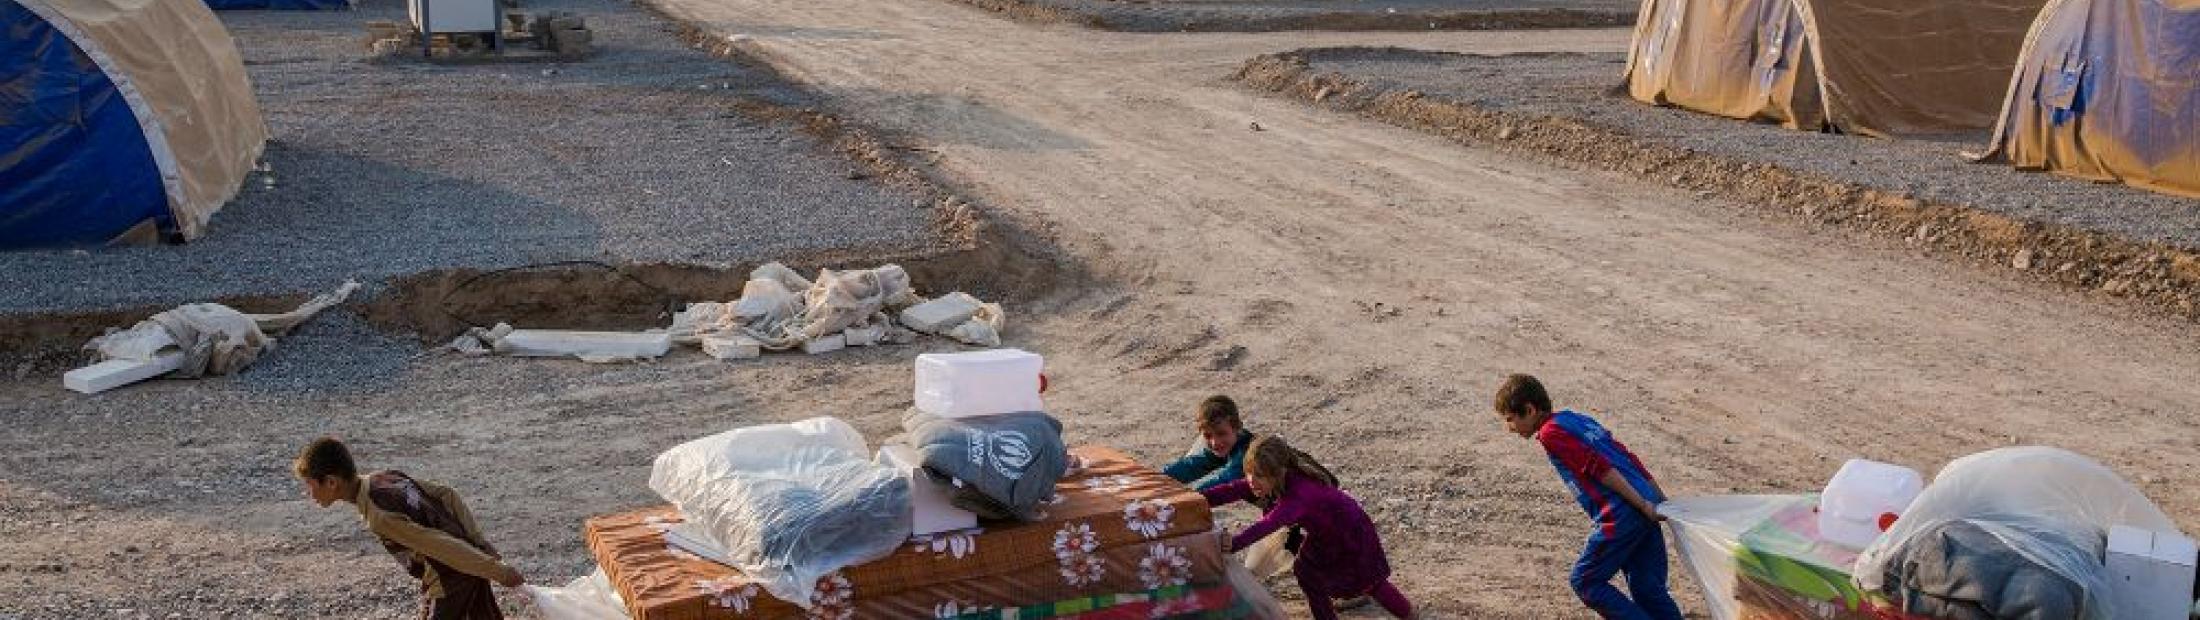 ACNUR podrá alojar 45.000 nuevos desplazados de la zona de Mosul